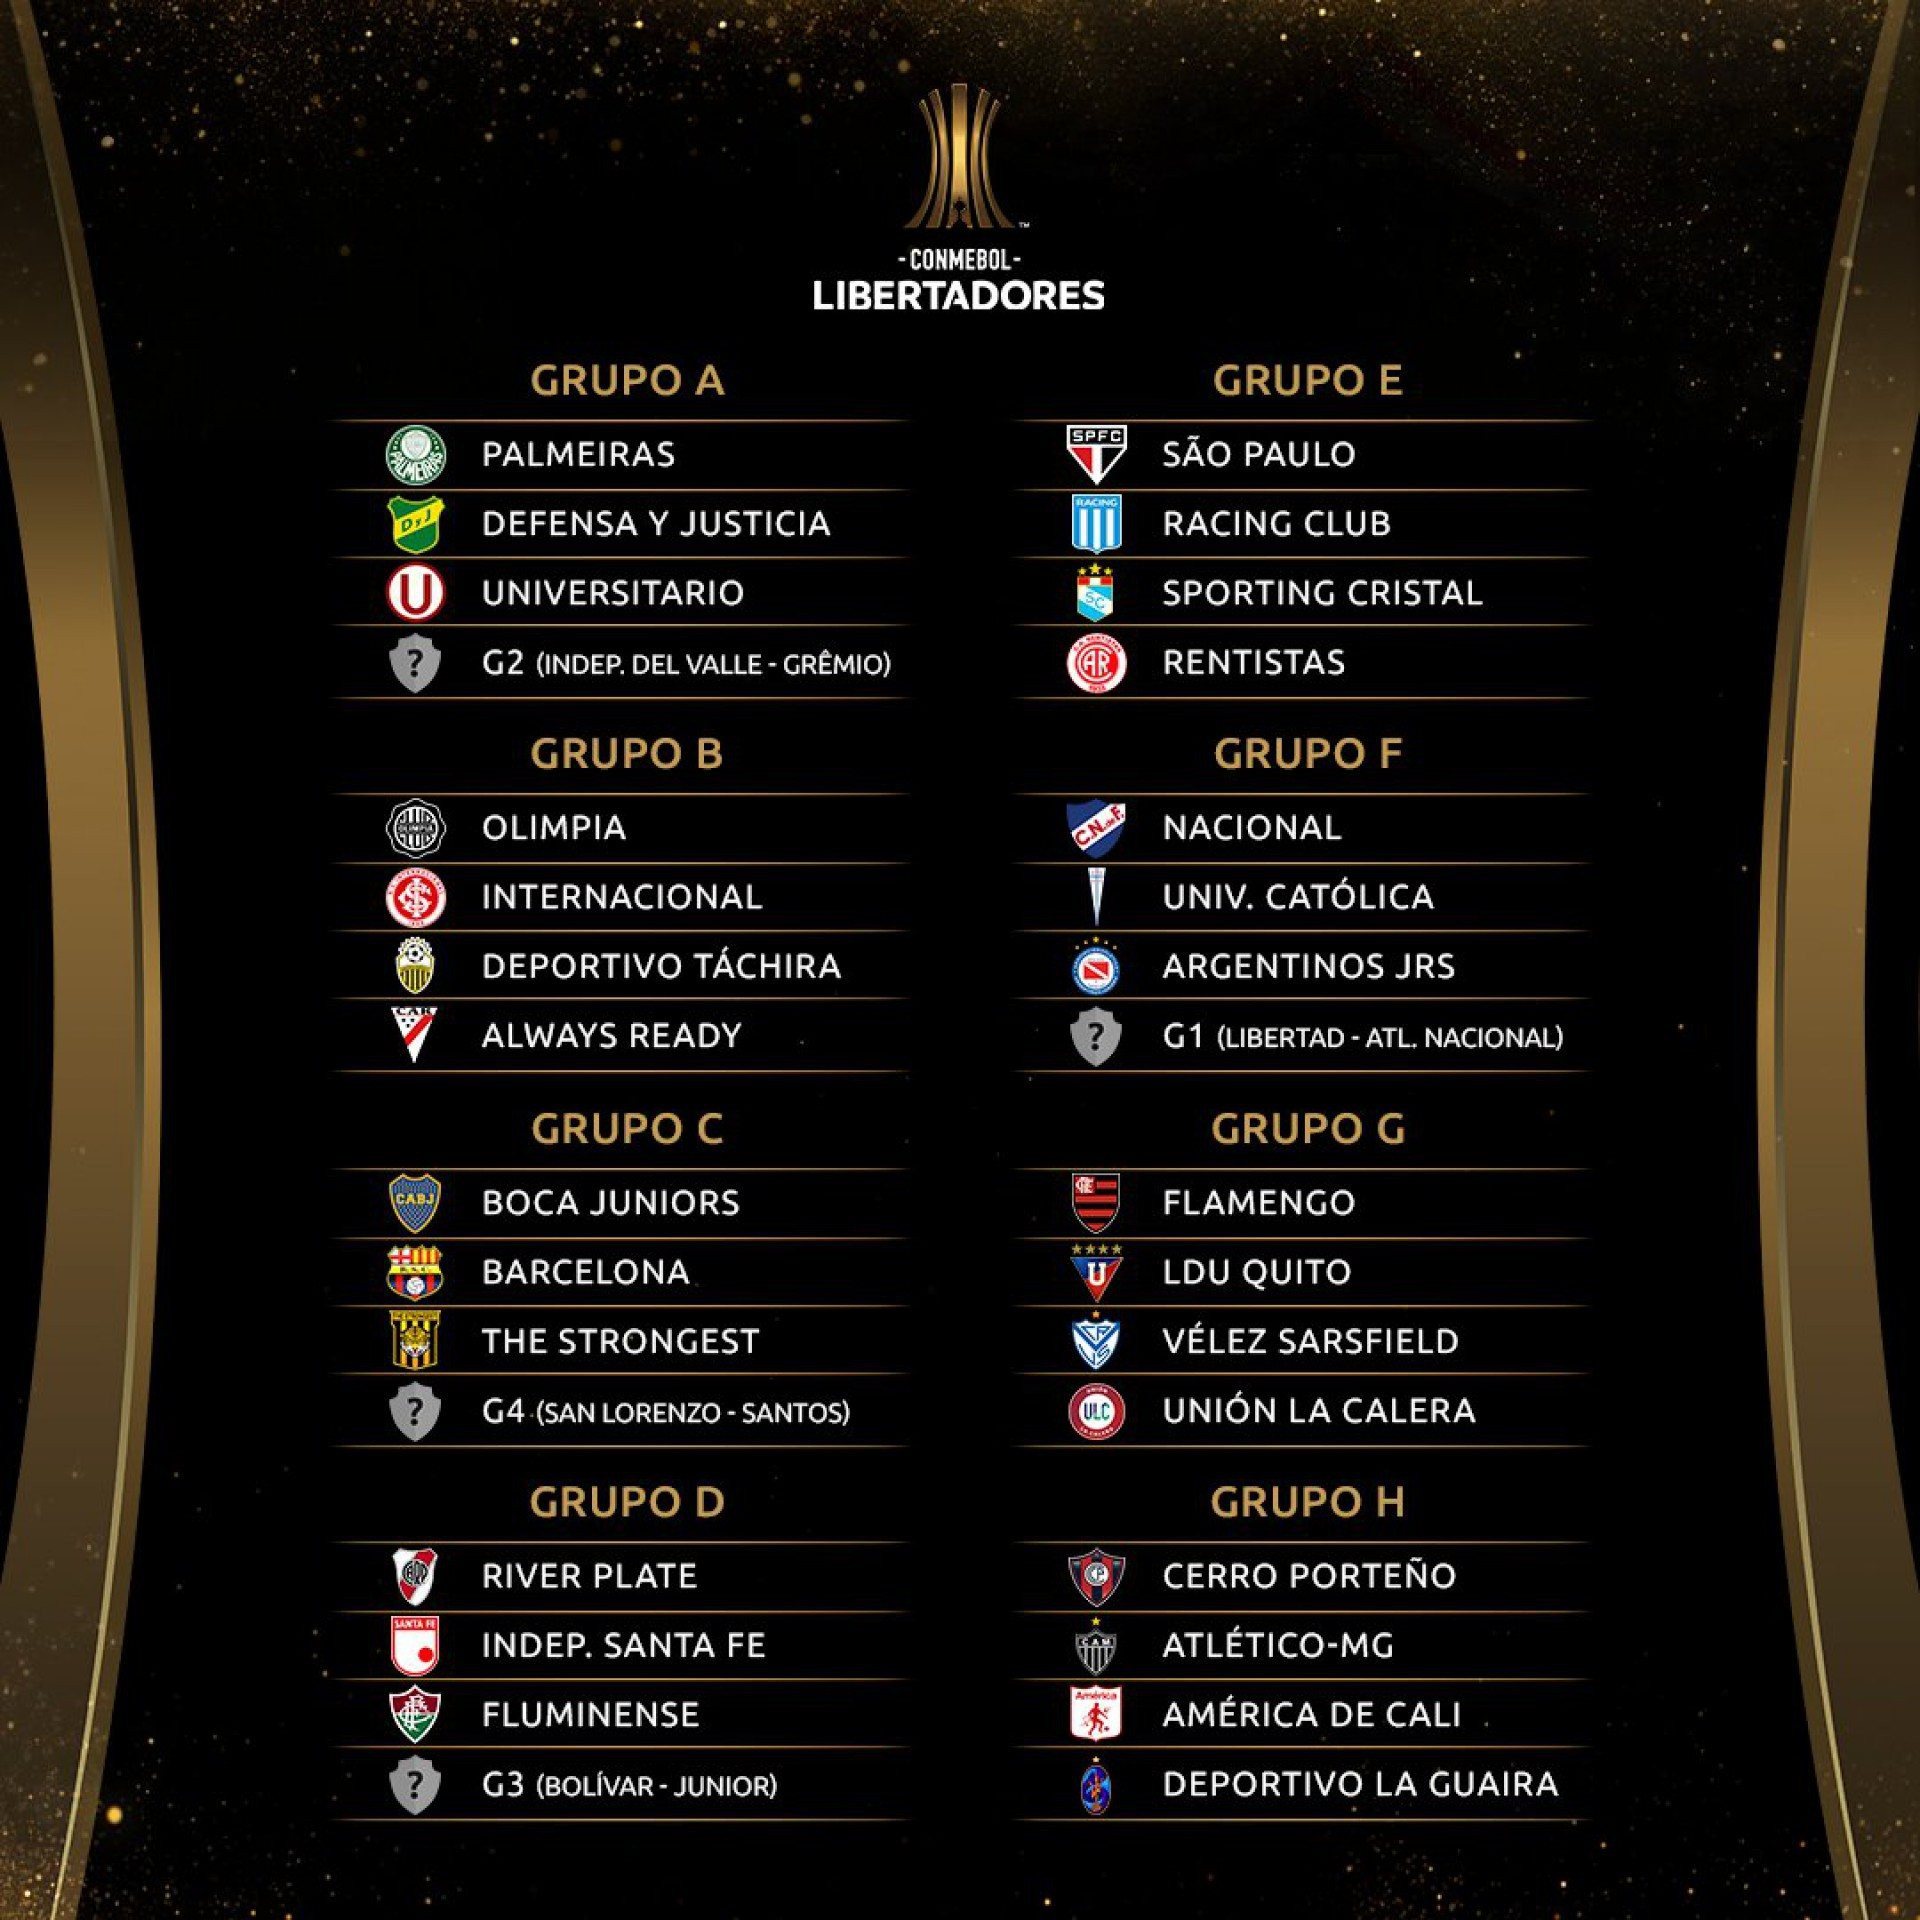 Grupos definidos da Libertadores de 2021 - Divulgação/Conmebol